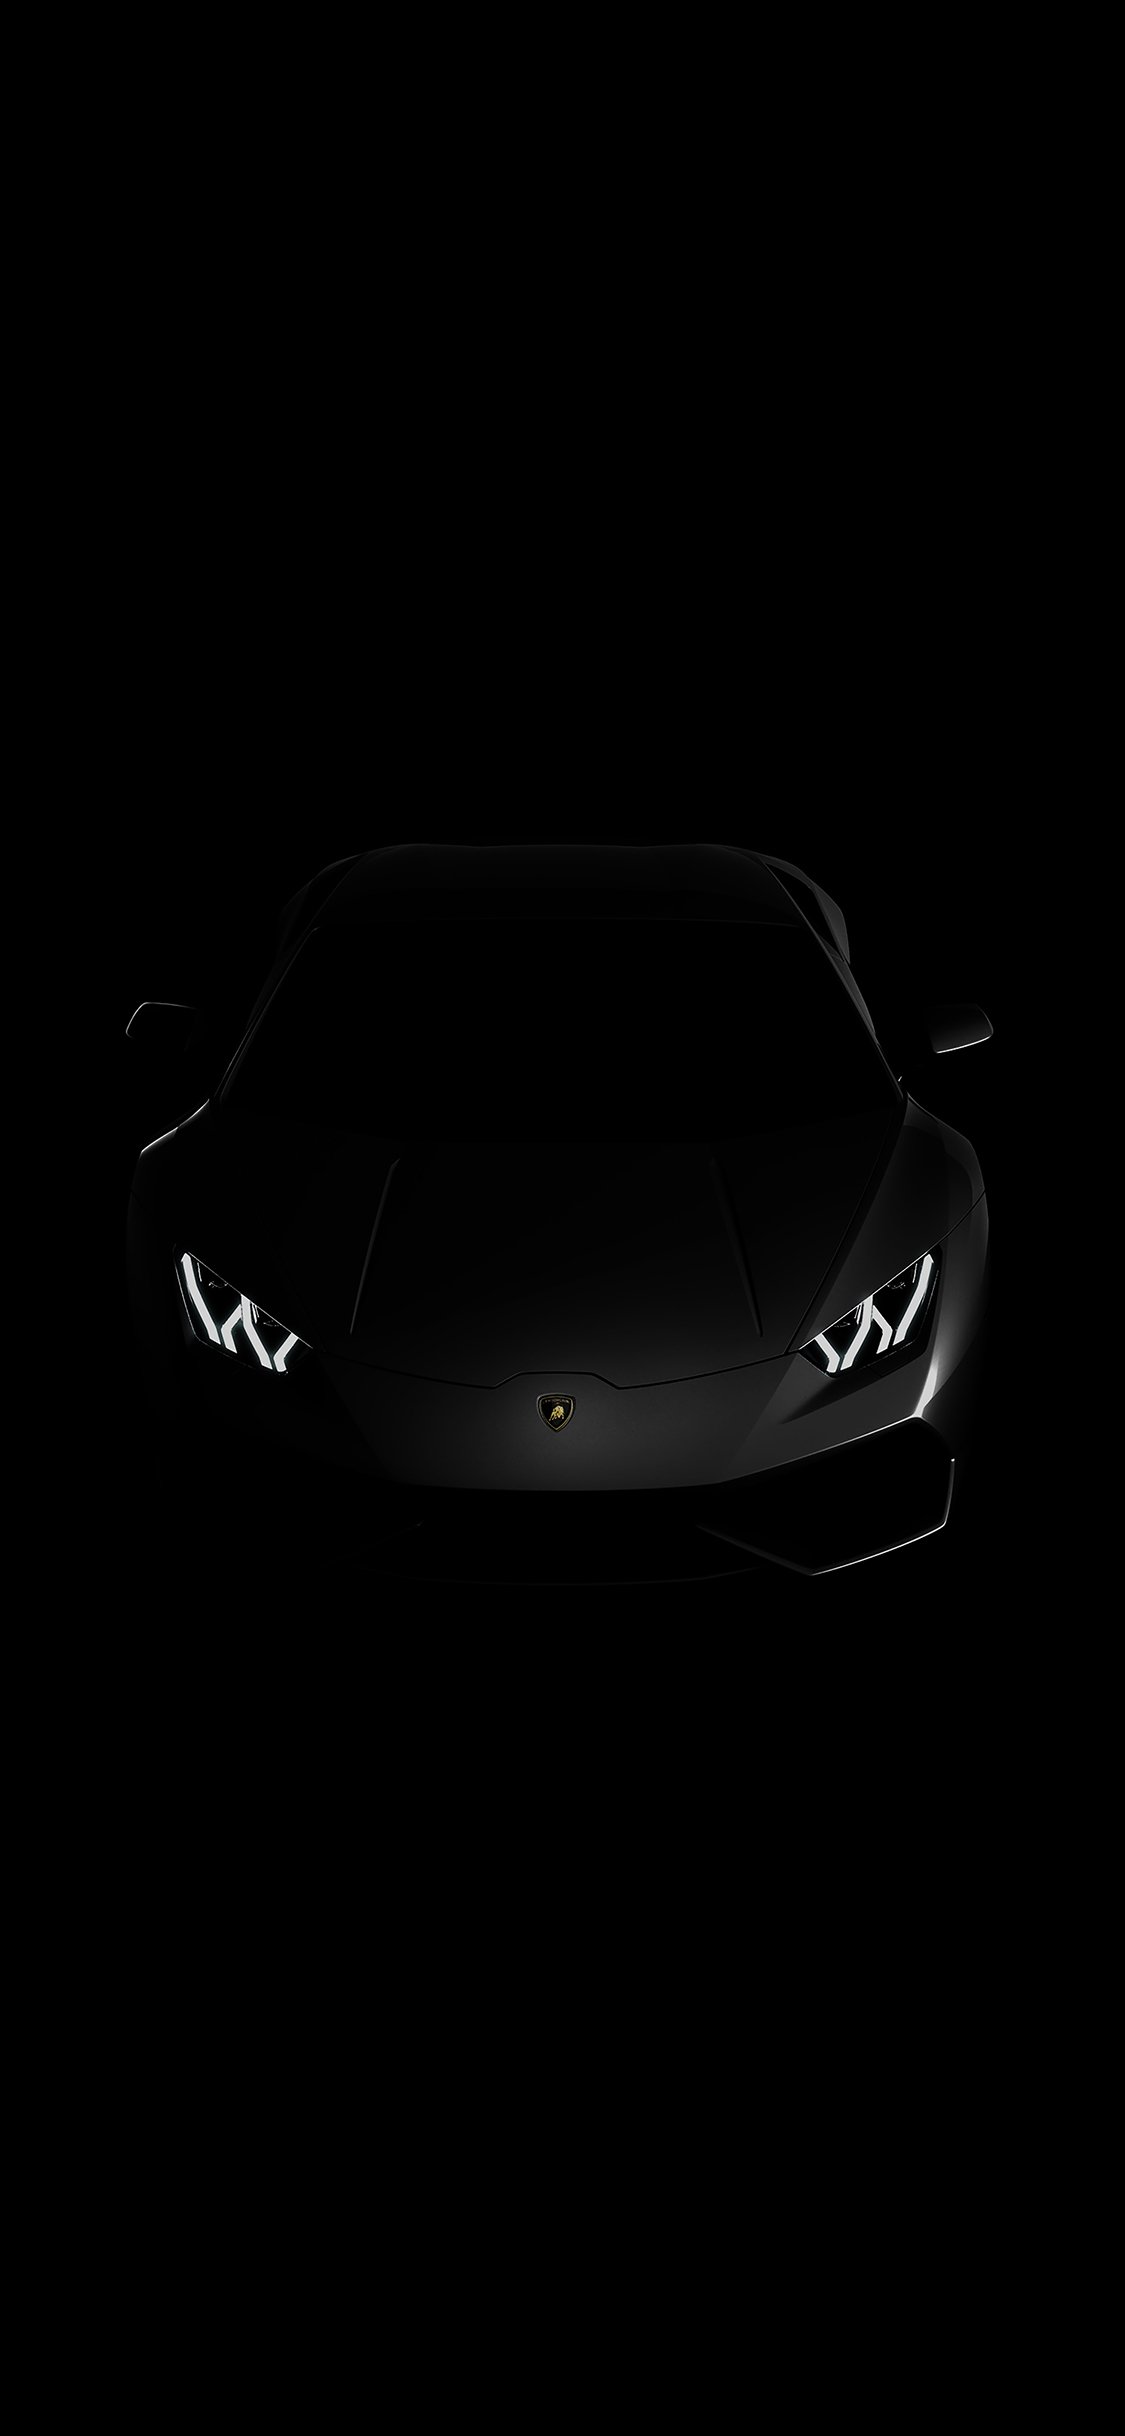 Dark Lamborghini Wallpaper - KoLPaPer - Awesome Free HD Wallpapers